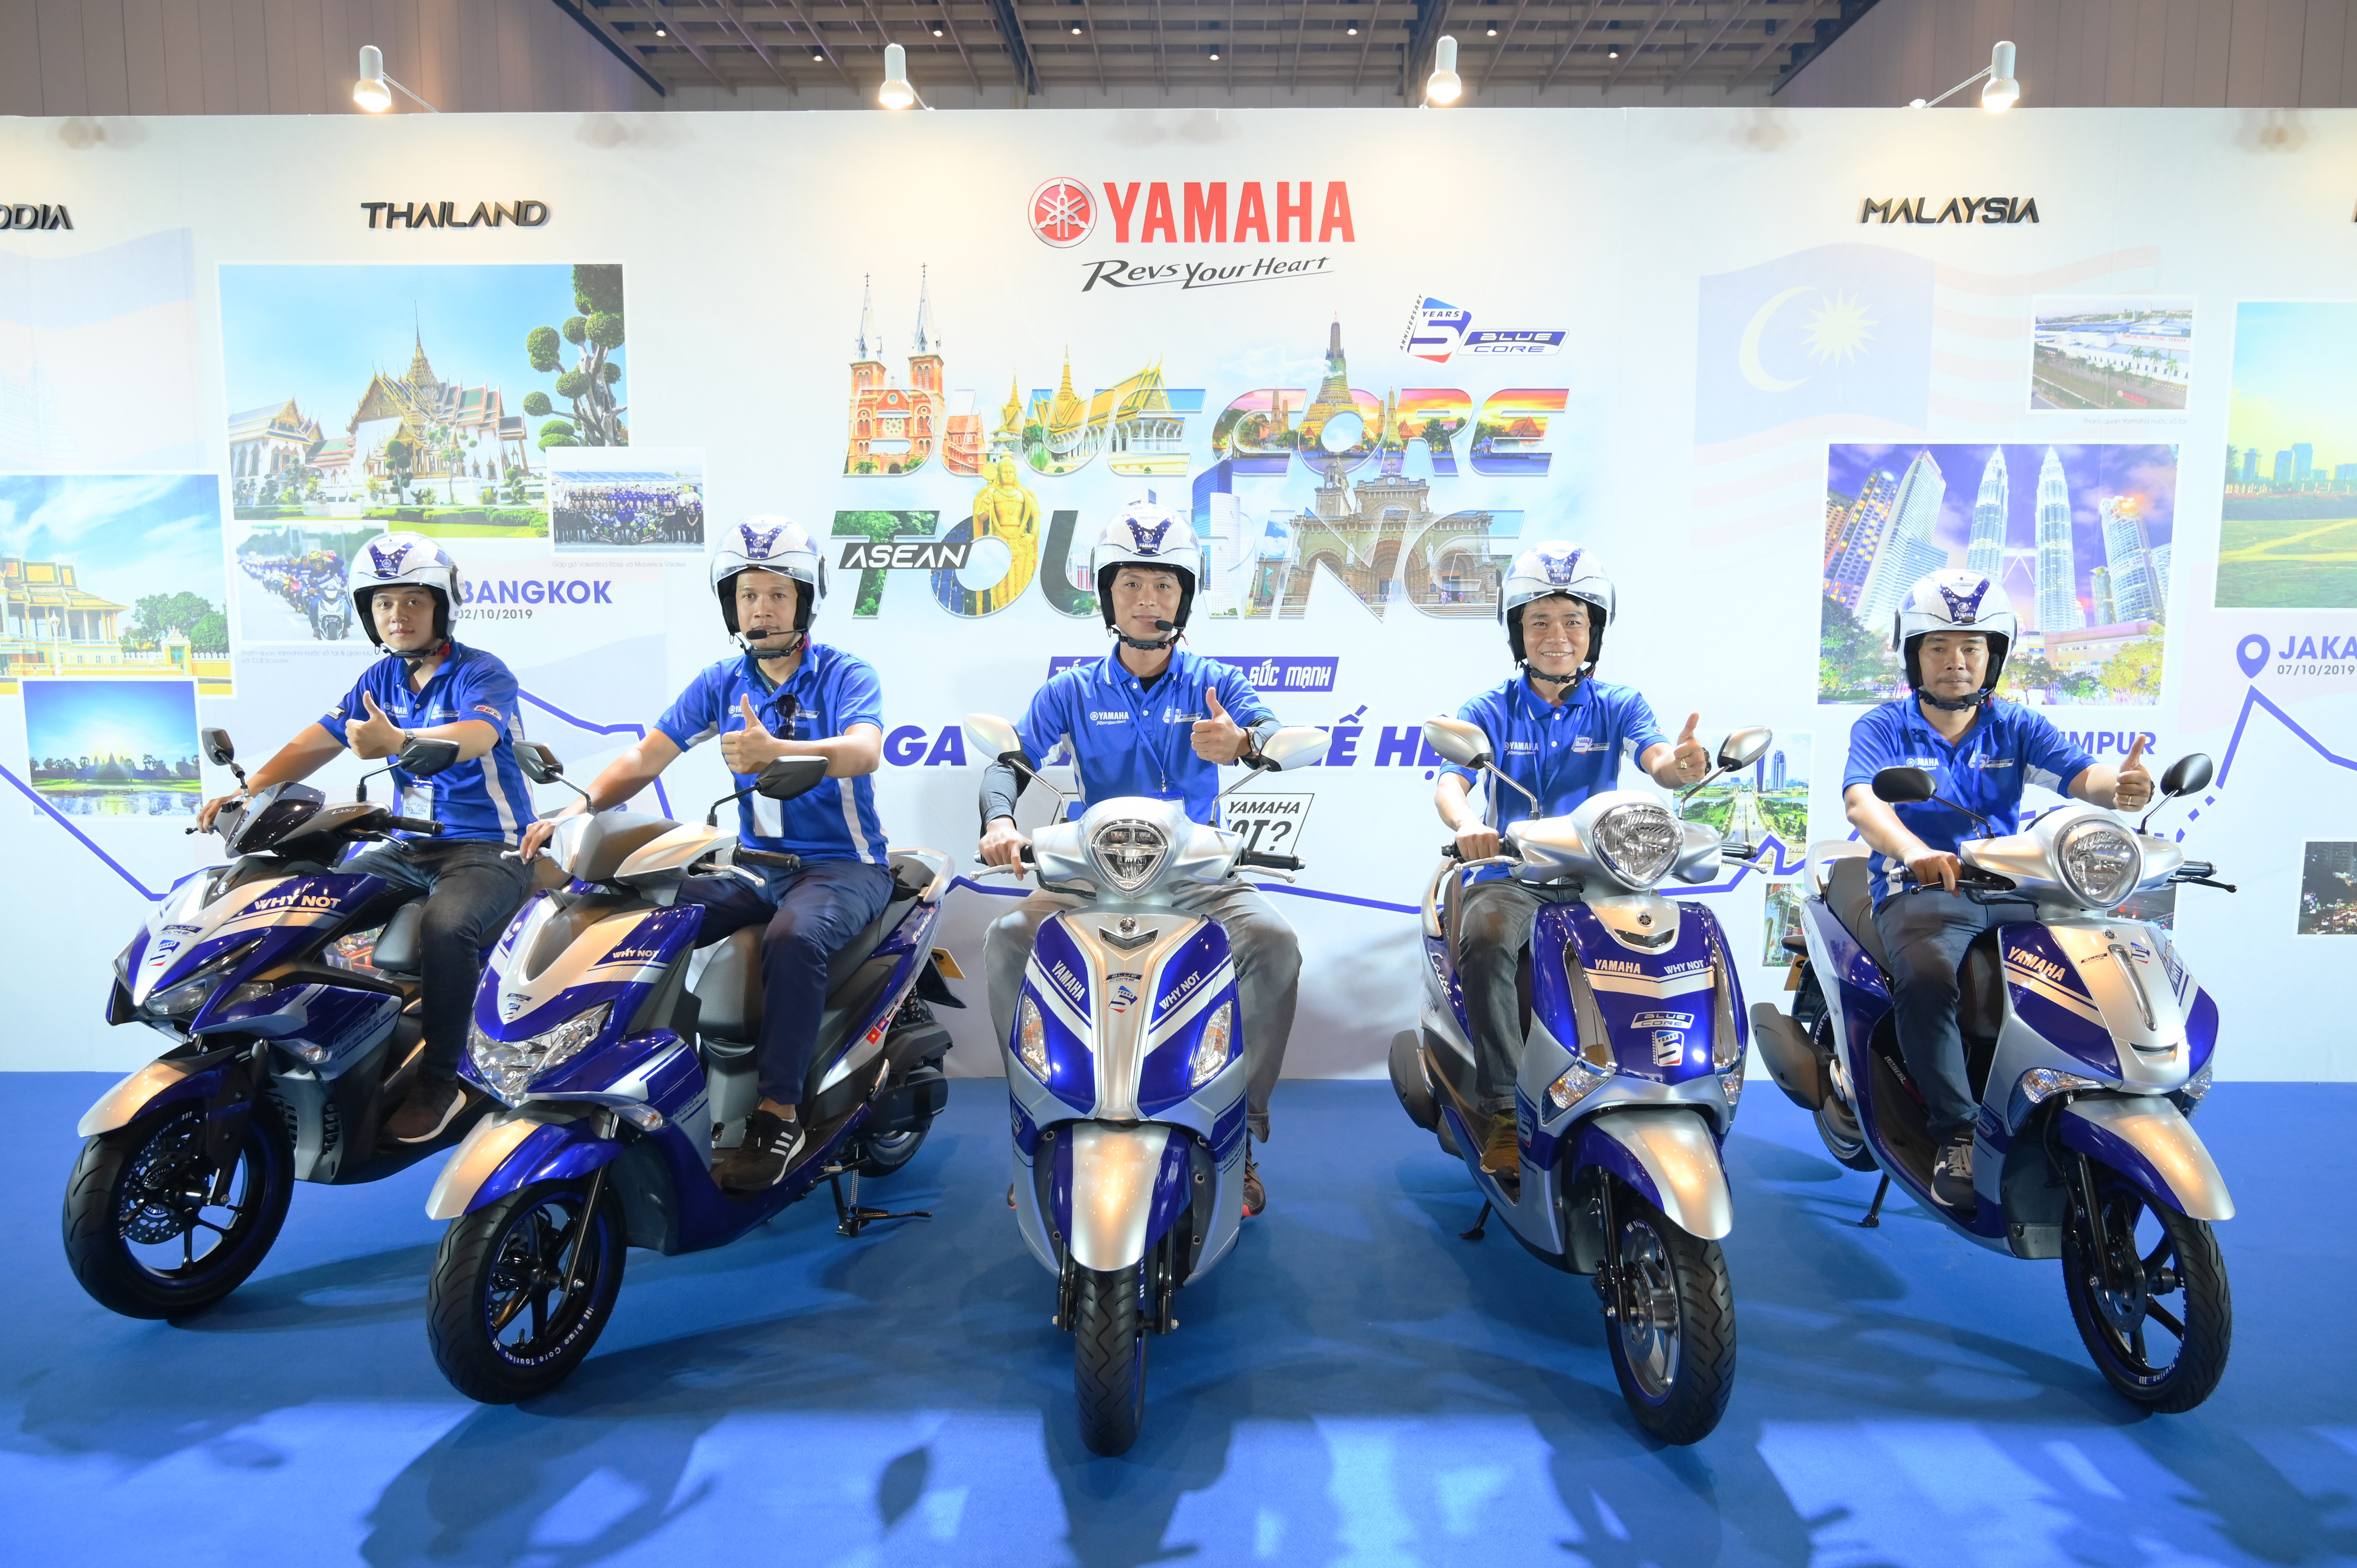 ASEAN BLUE CORE TOURING] HÀNH TRÌNH ĐI QUA 6 NƯỚC ĐÔNG NAM Á, CẬP NHẬT  CHẶNG ĐẦU TIÊN VIỆT NAM - CAMPUCHIA - Yamaha Motor Việt Nam